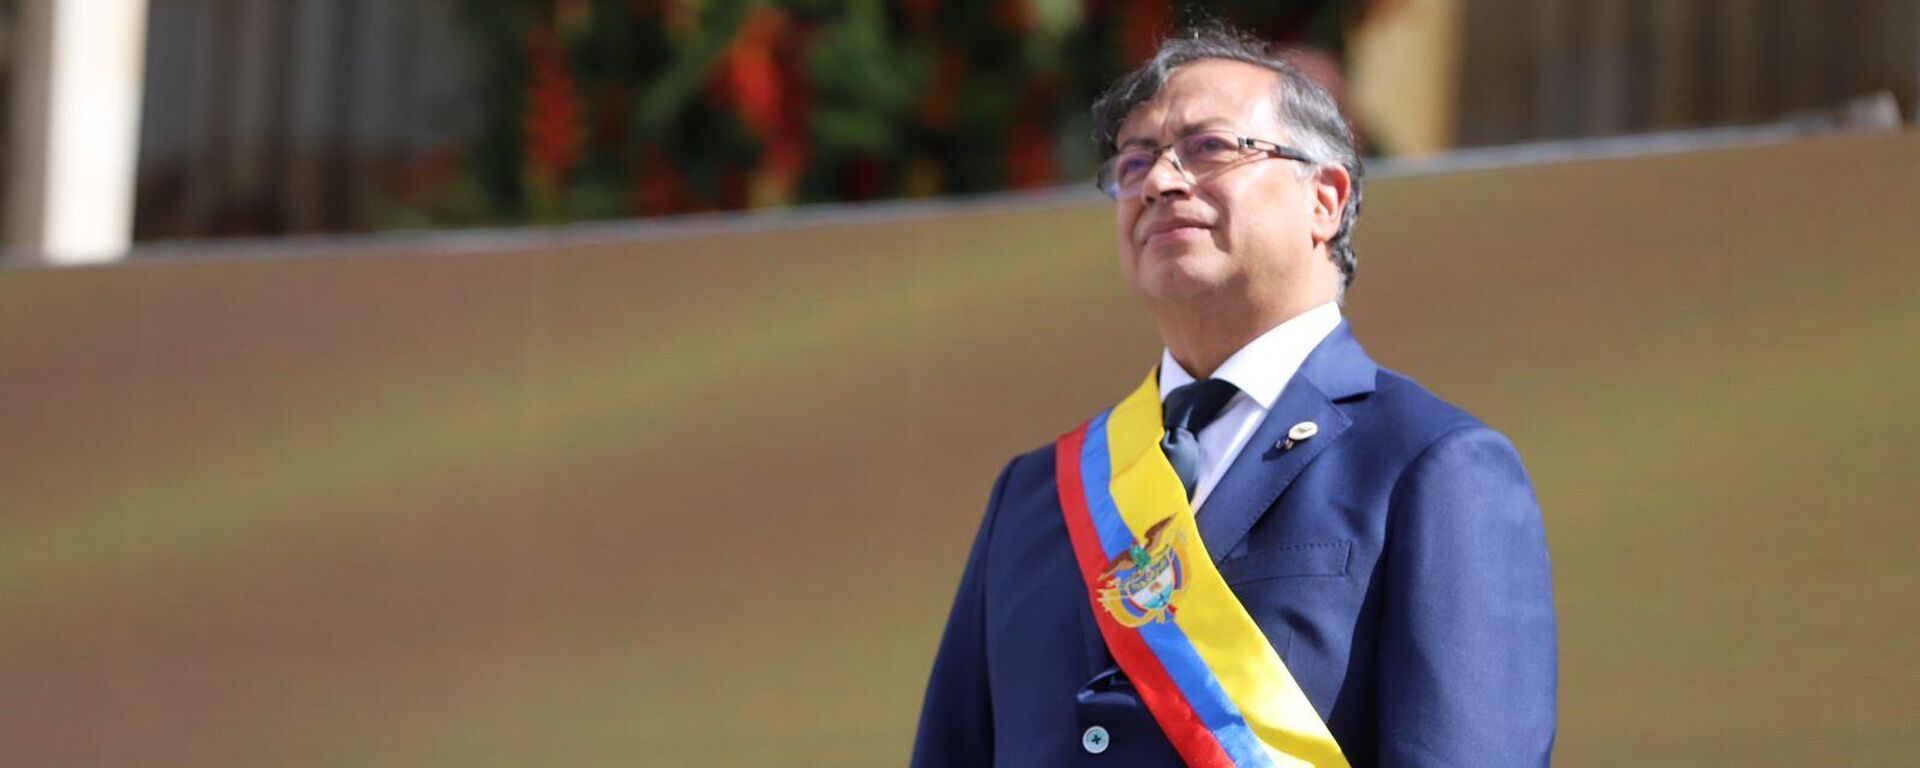 Gustavo Petro, nuevo presidente de Colombia - Sputnik Mundo, 1920, 08.08.2022